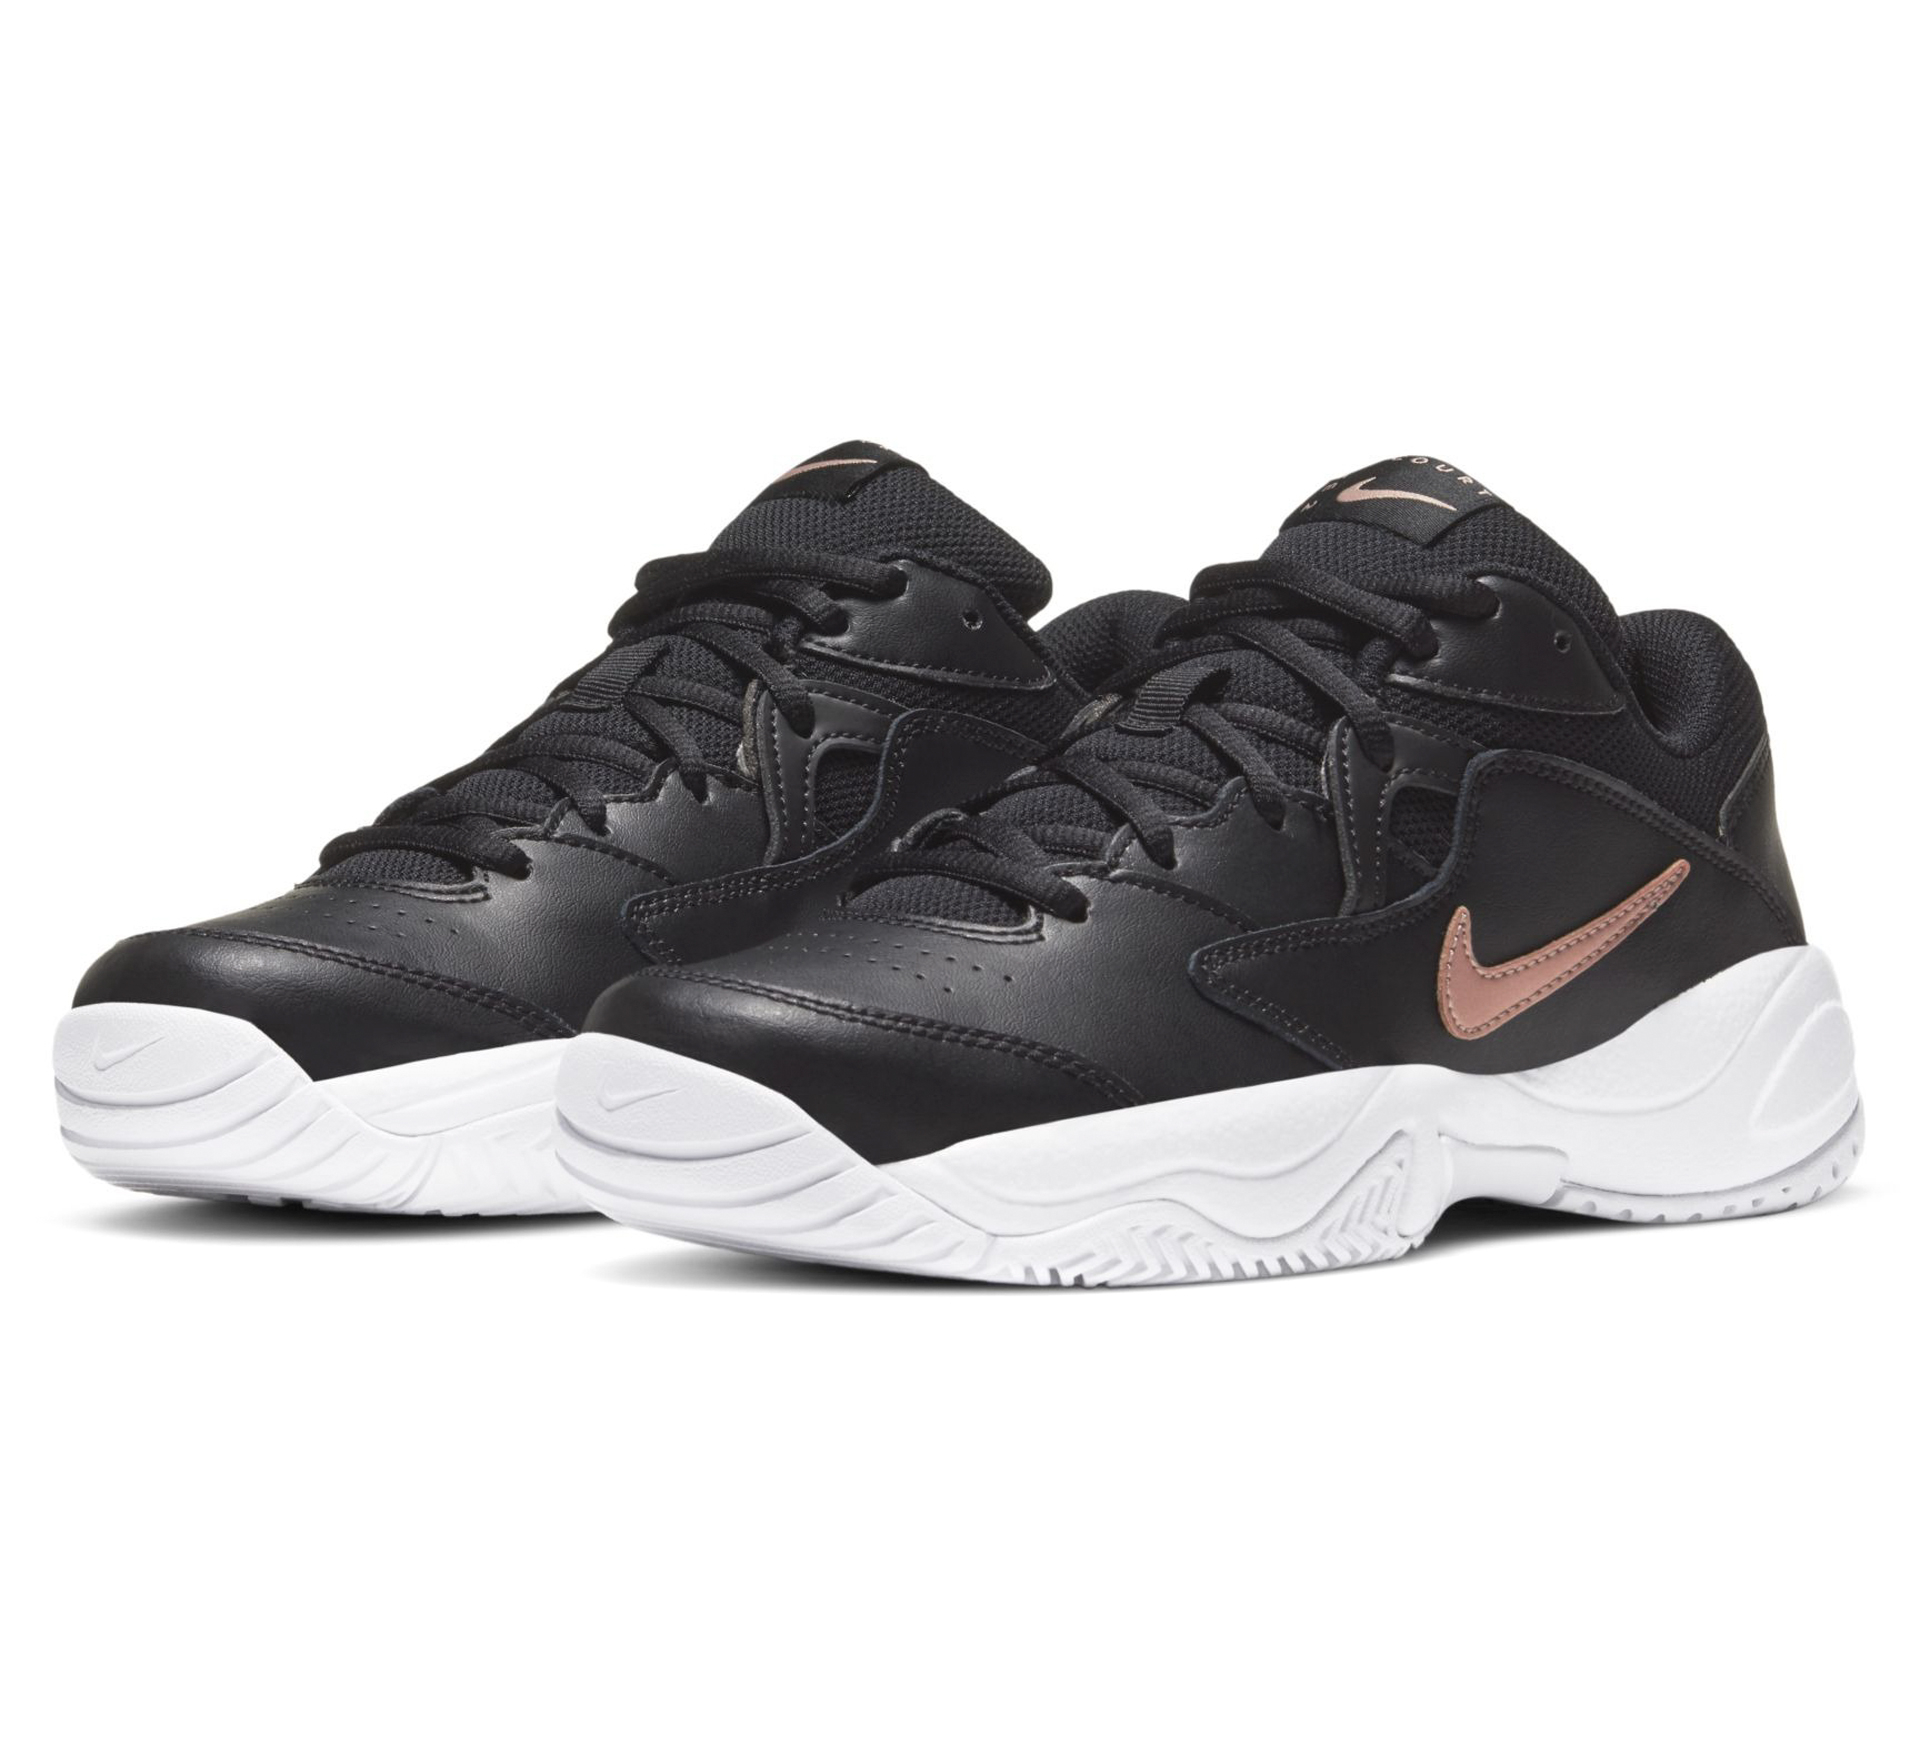 Chaussures de tennis Nike Court Lite 2 Femme